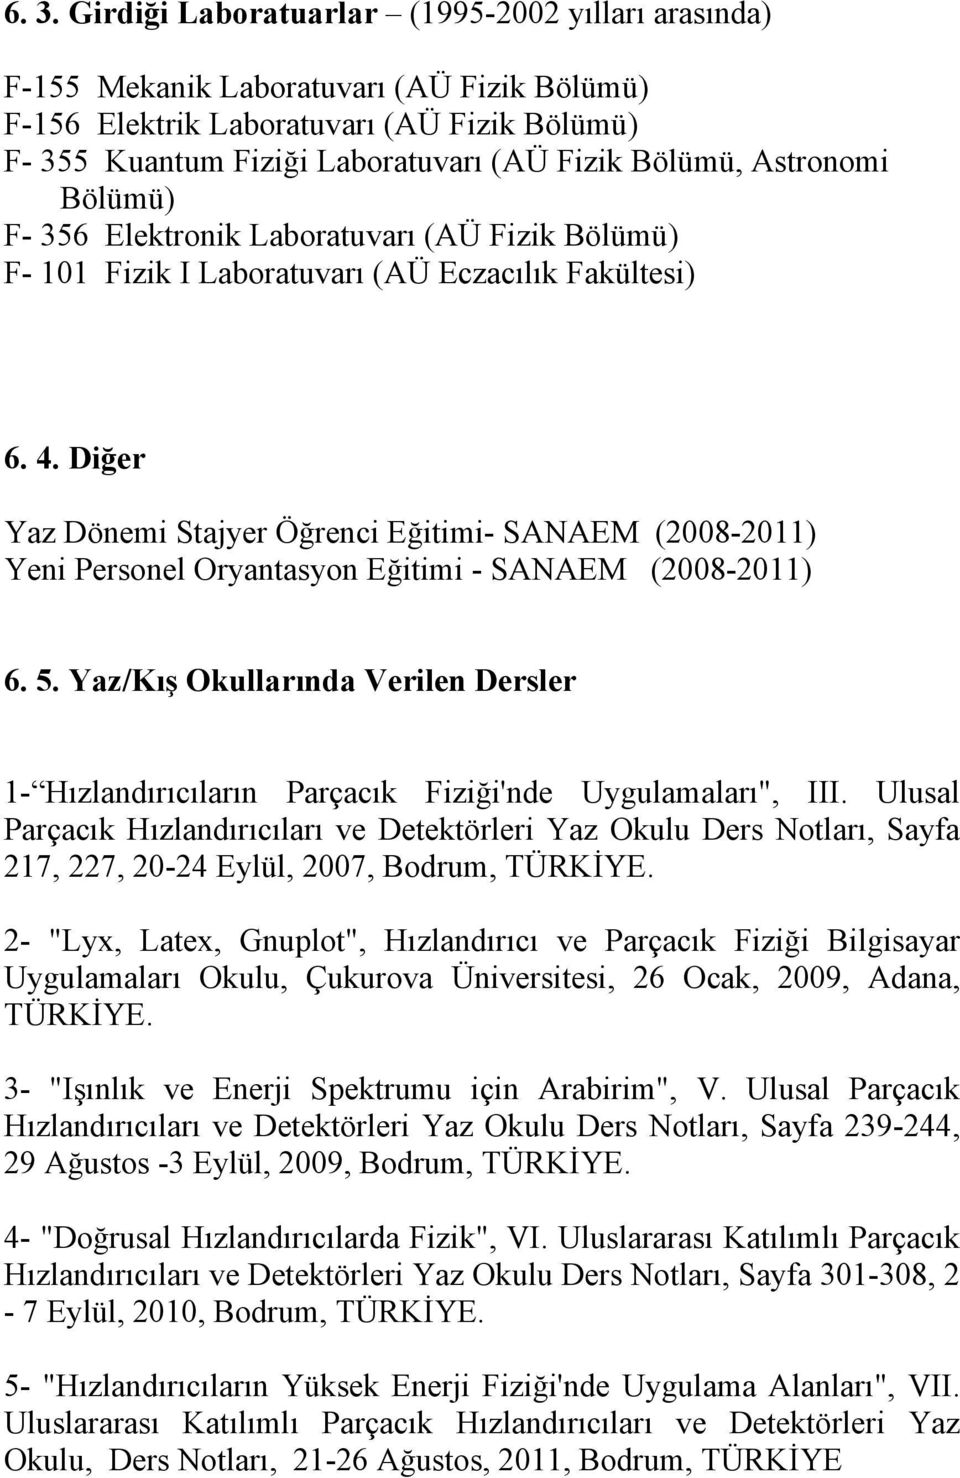 Diğer Yaz Dönemi Stajyer Öğrenci Eğitimi- SANAEM (2008-2011) Yeni Personel Oryantasyon Eğitimi - SANAEM (2008-2011) 6. 5.